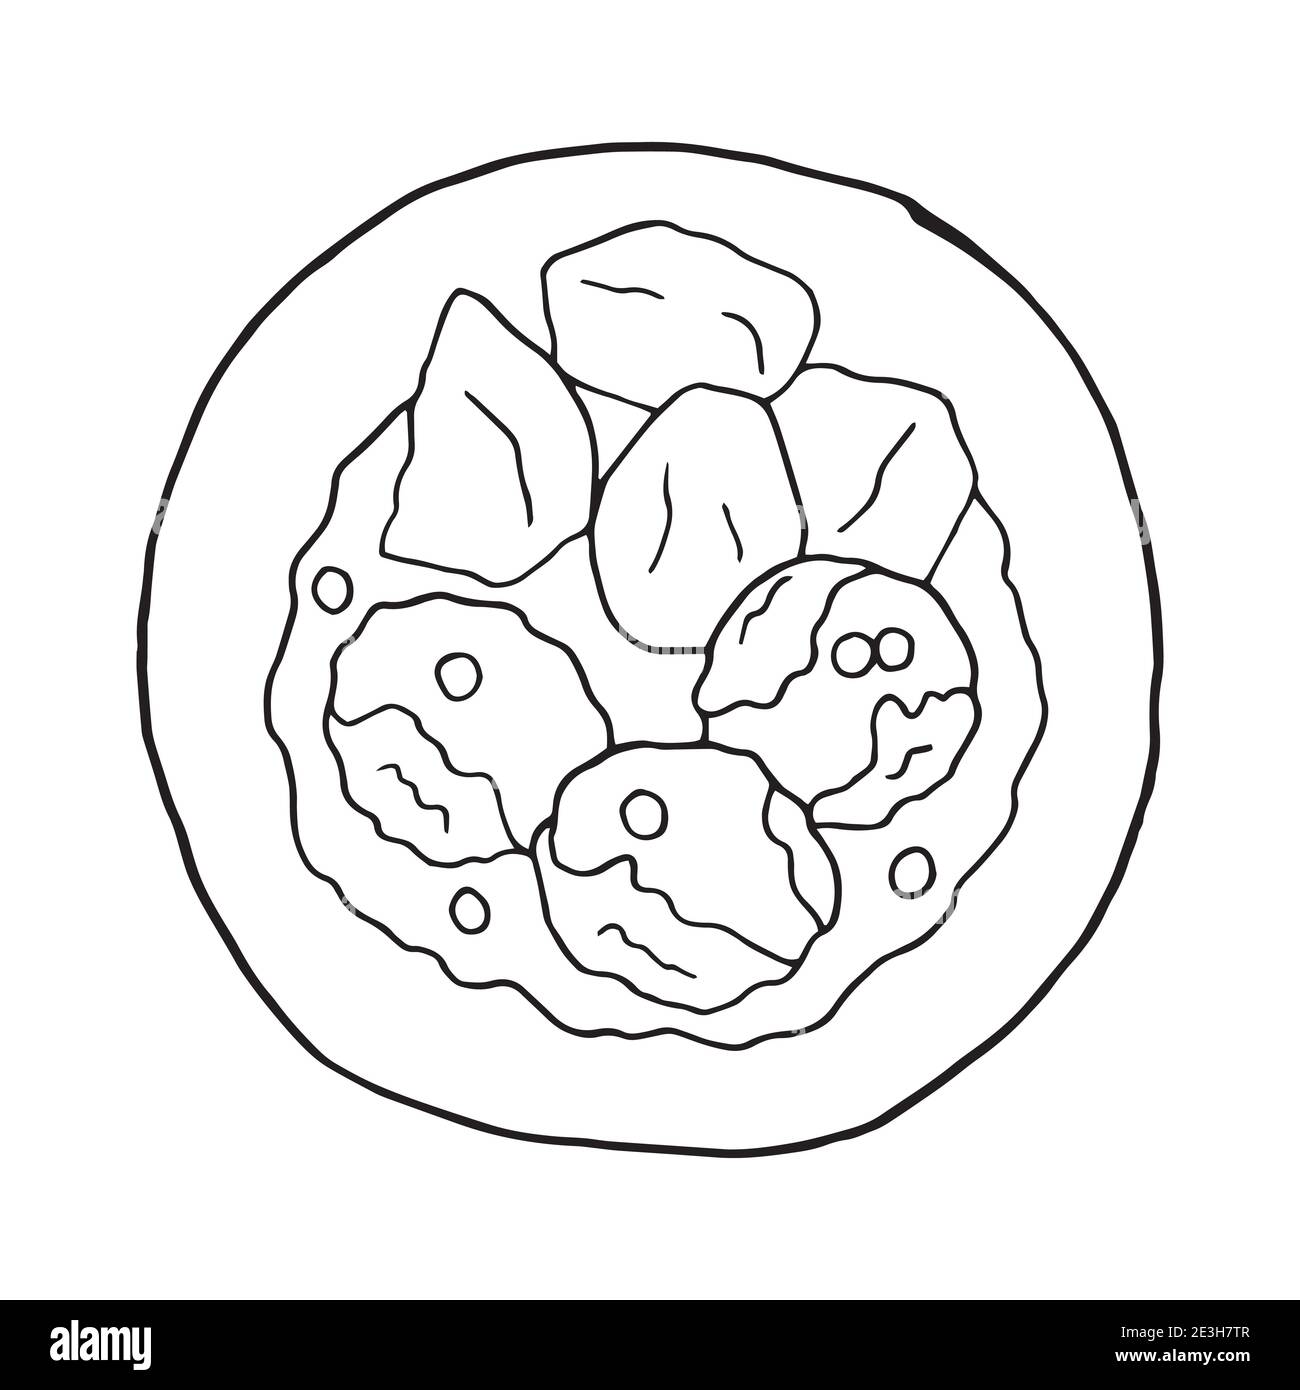 Doodle vectoriel dessiné à la main Konigsberger Klopse. Balles de Kingsmountainer. Plat de cuisine allemande. Élément de dessin de conception pour le menu café, restaurant, étiquette Illustration de Vecteur